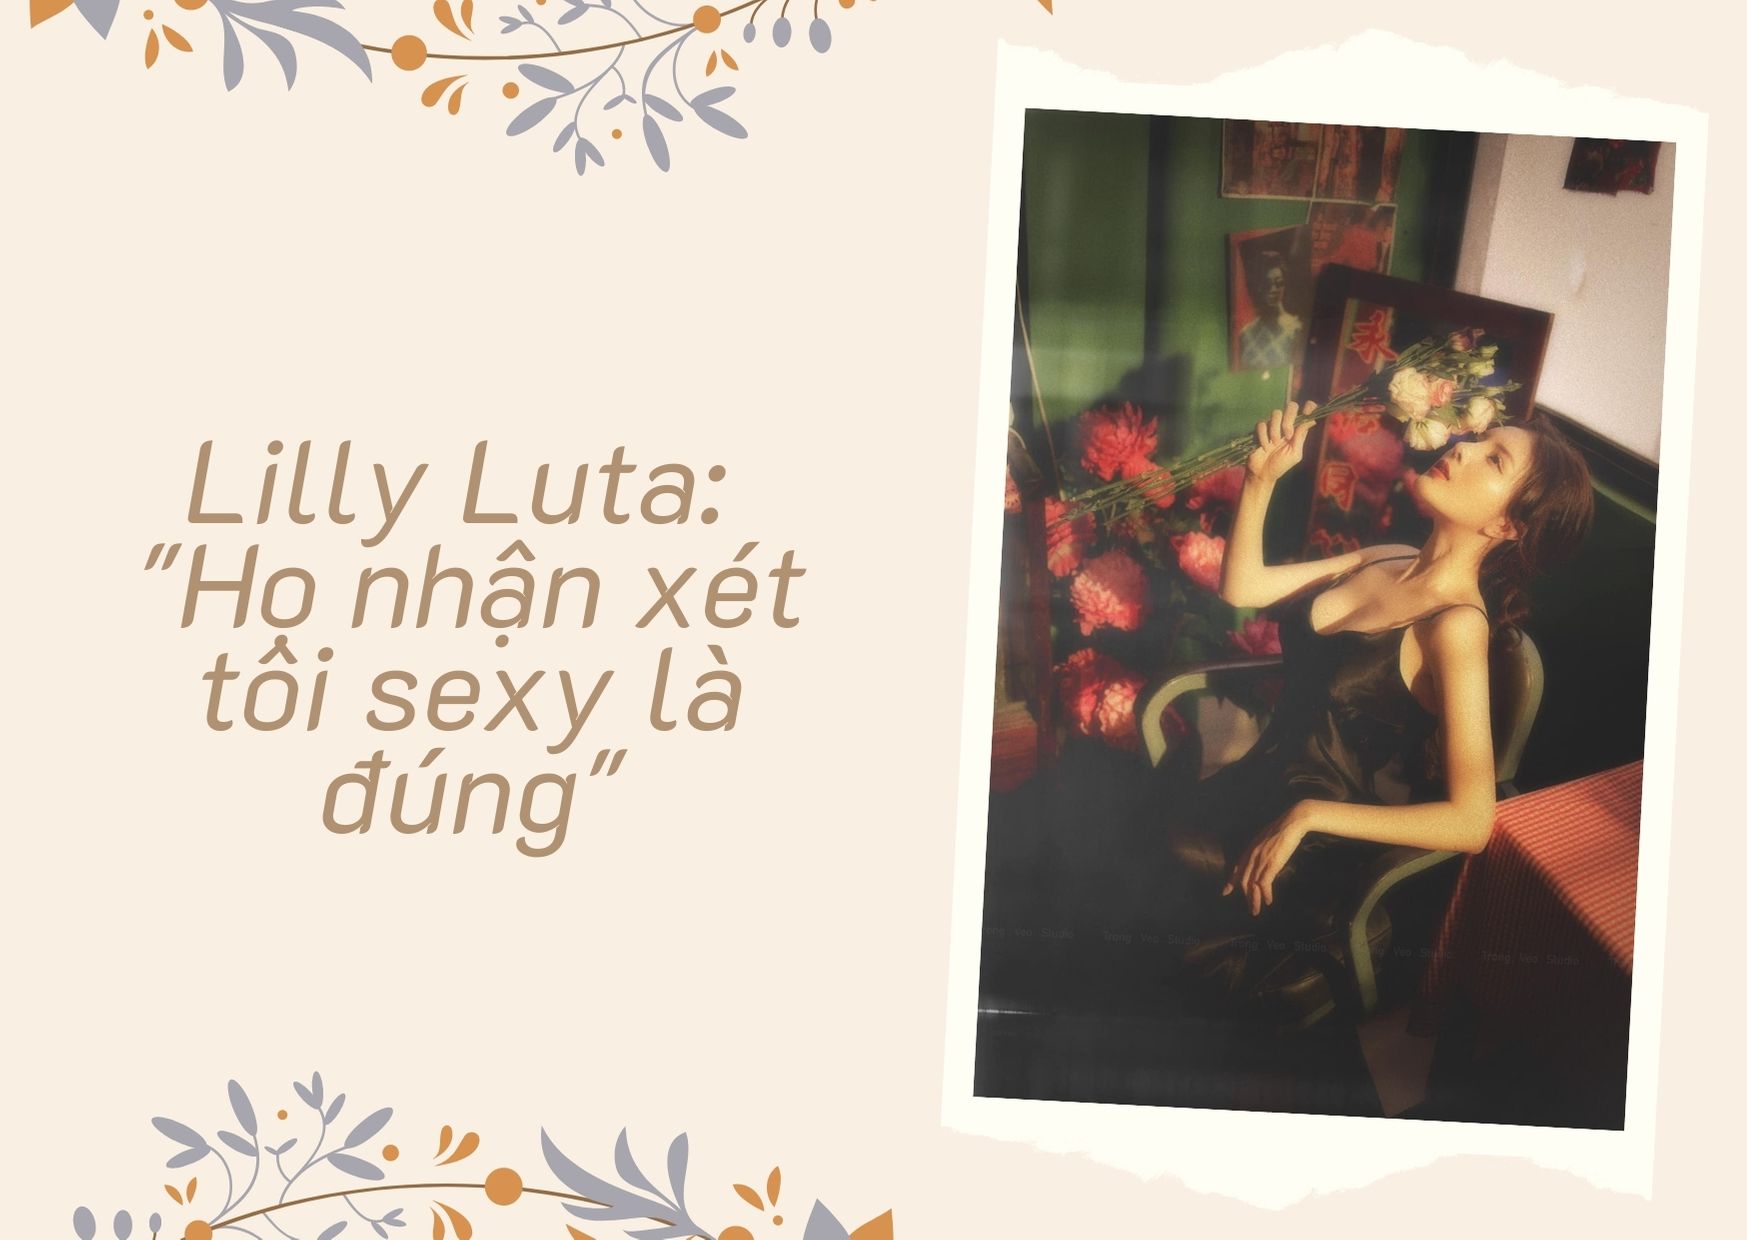 Lilly Luta: Tôi thấy mình đẹp nên muốn lưu giữ thanh xuân - Hình 2